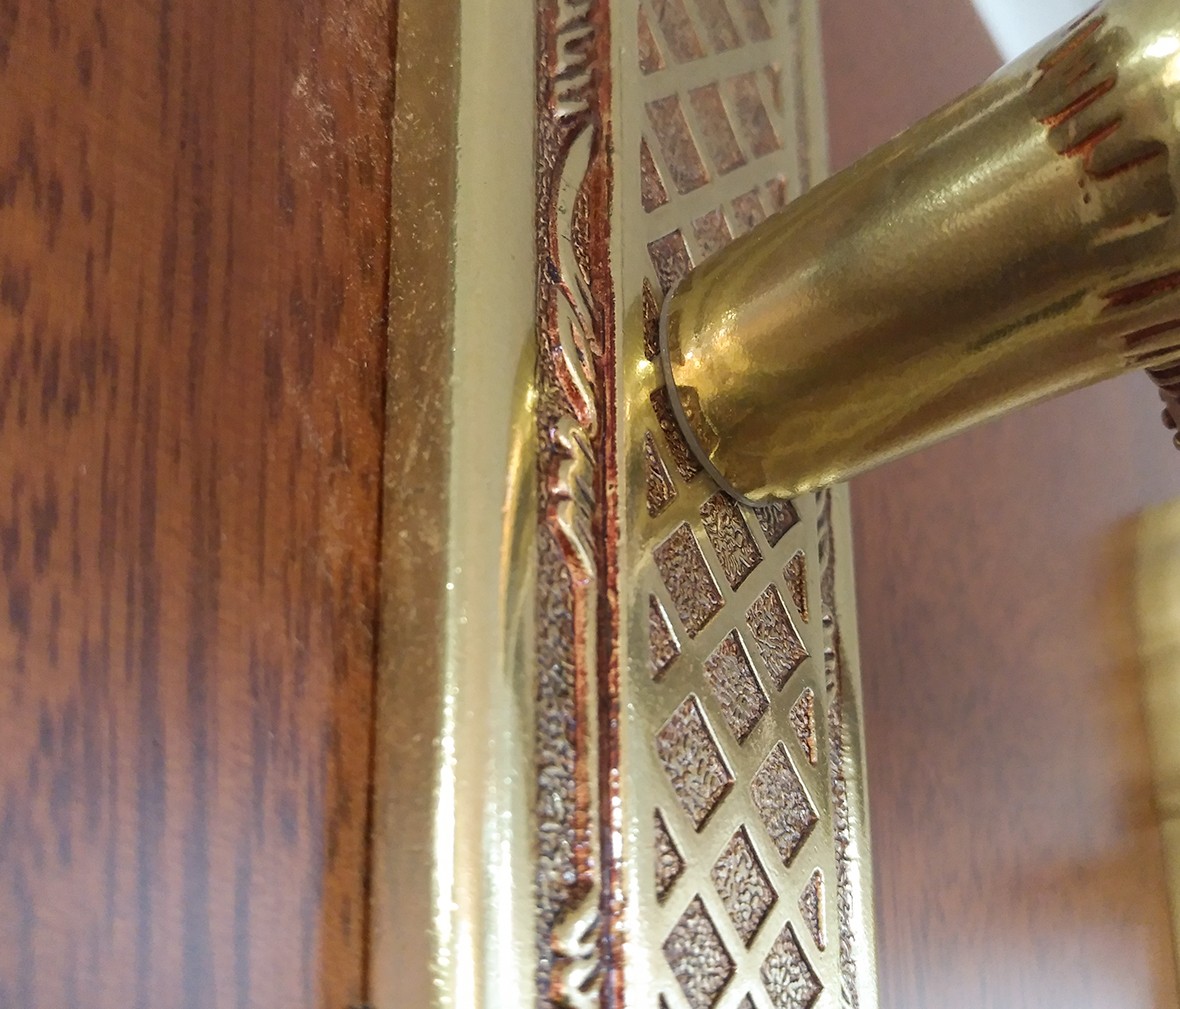 晾霸五金 米开朗821-23欧洲金型号门锁 铜材质 优质门锁 情景细节